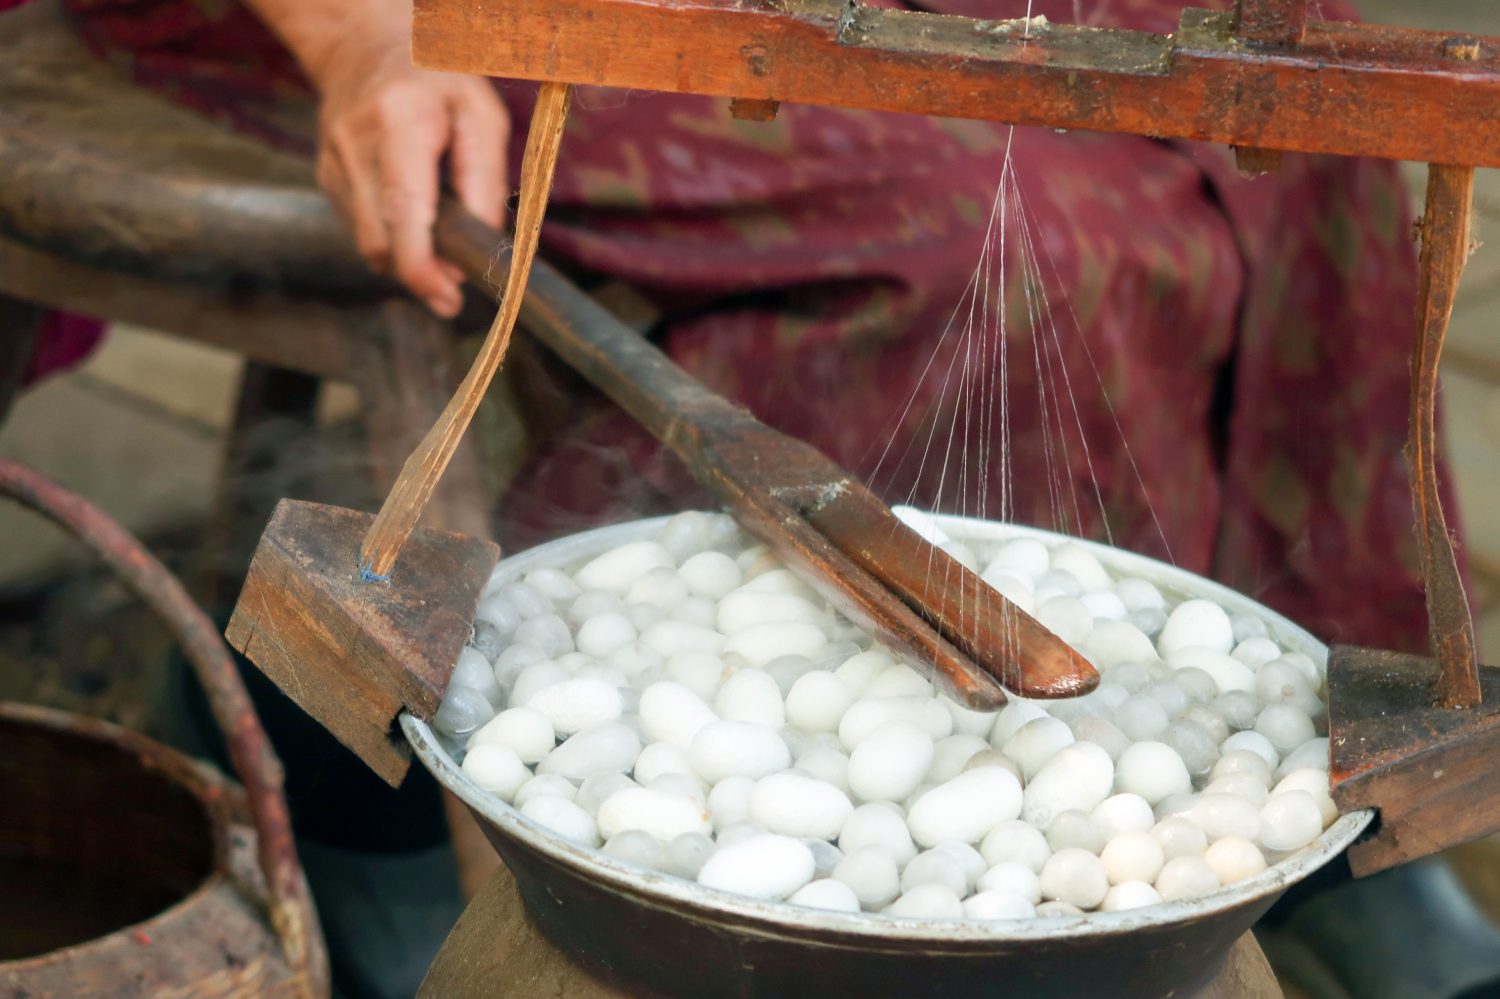 tradizionale produzione della seta.  Il processo di produzione manuale della seta dai bozzoli dei bachi da seta.